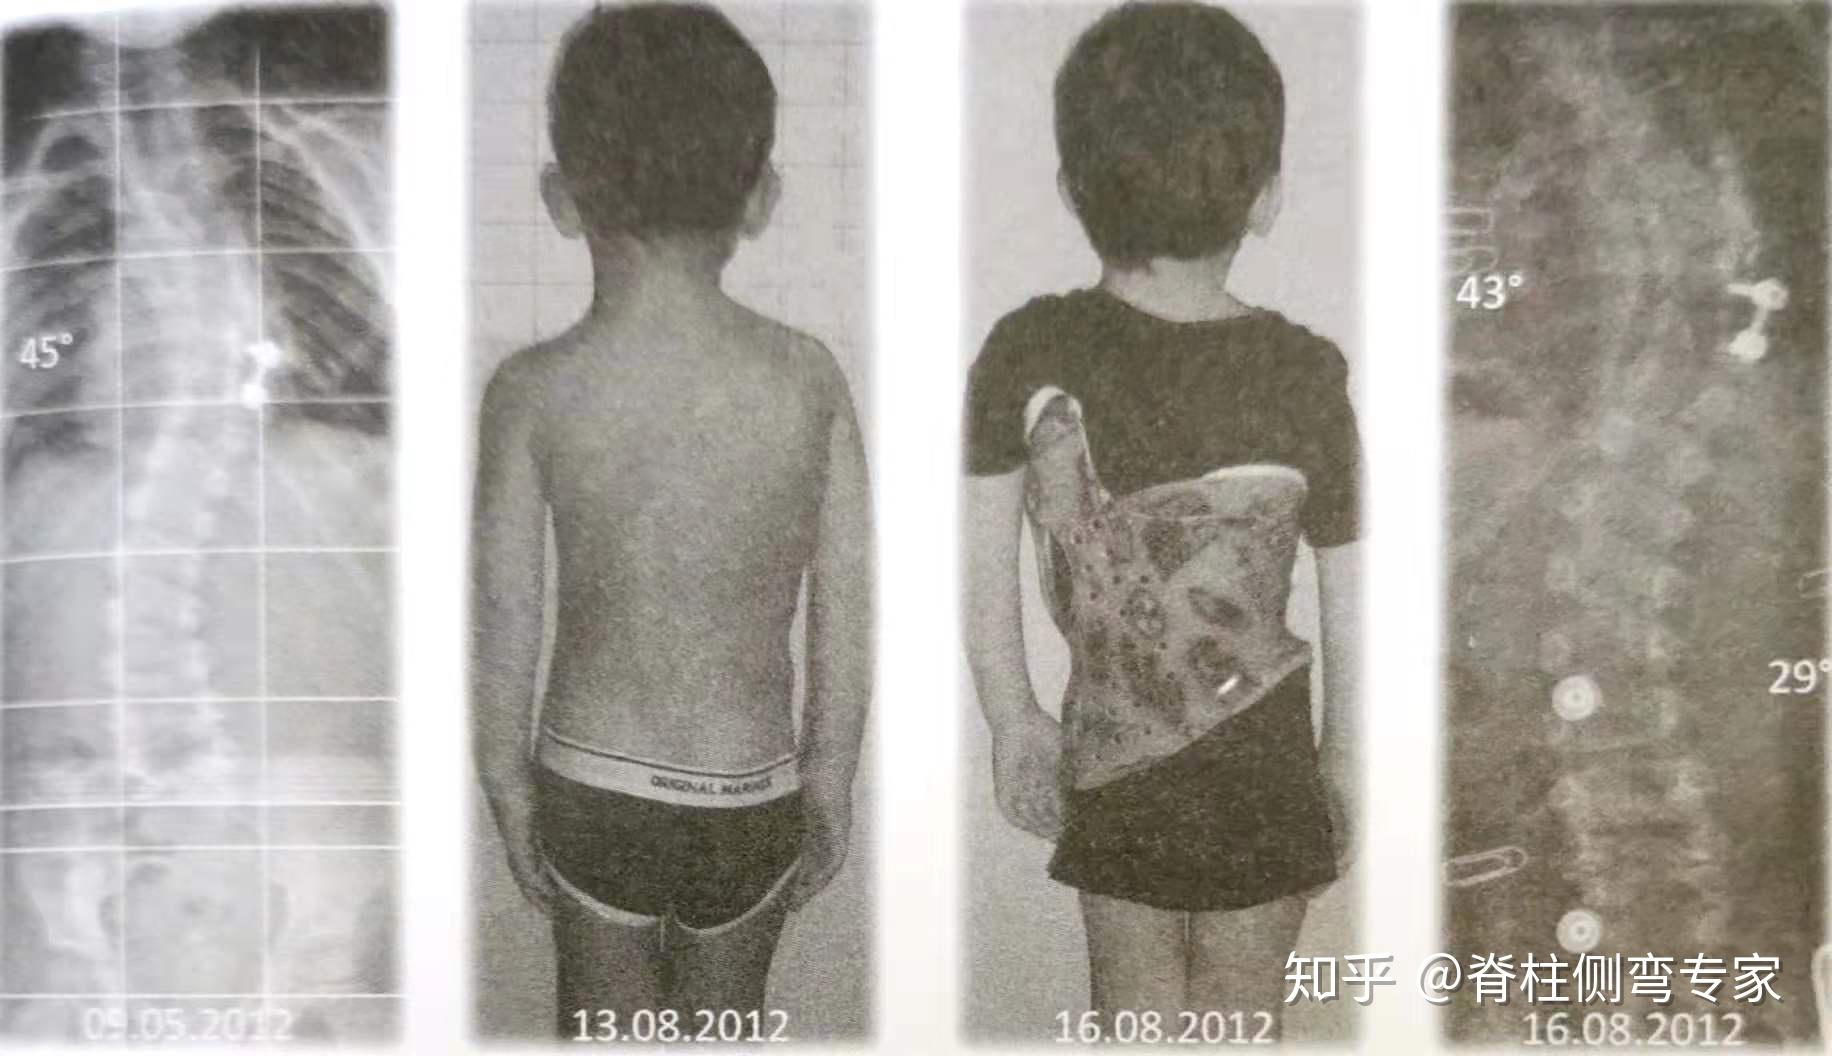 图2和图3是一个患有先天性脊柱侧弯的儿童,他的侧凸在手术后持续恶化.